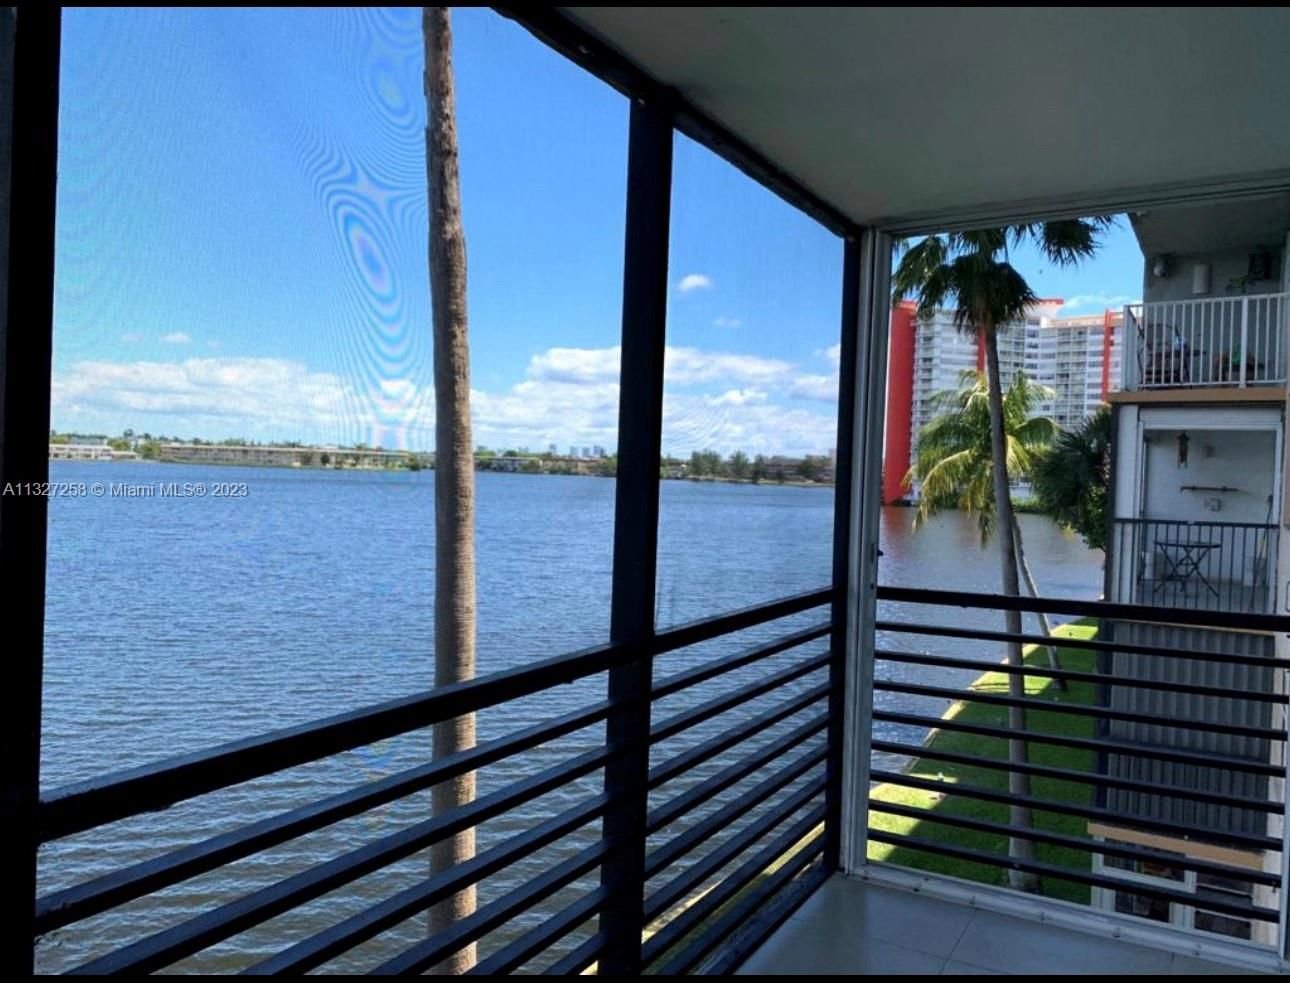 Real estate property located at 1175 Miami Gardens Dr #301, Miami-Dade County, Miami, FL